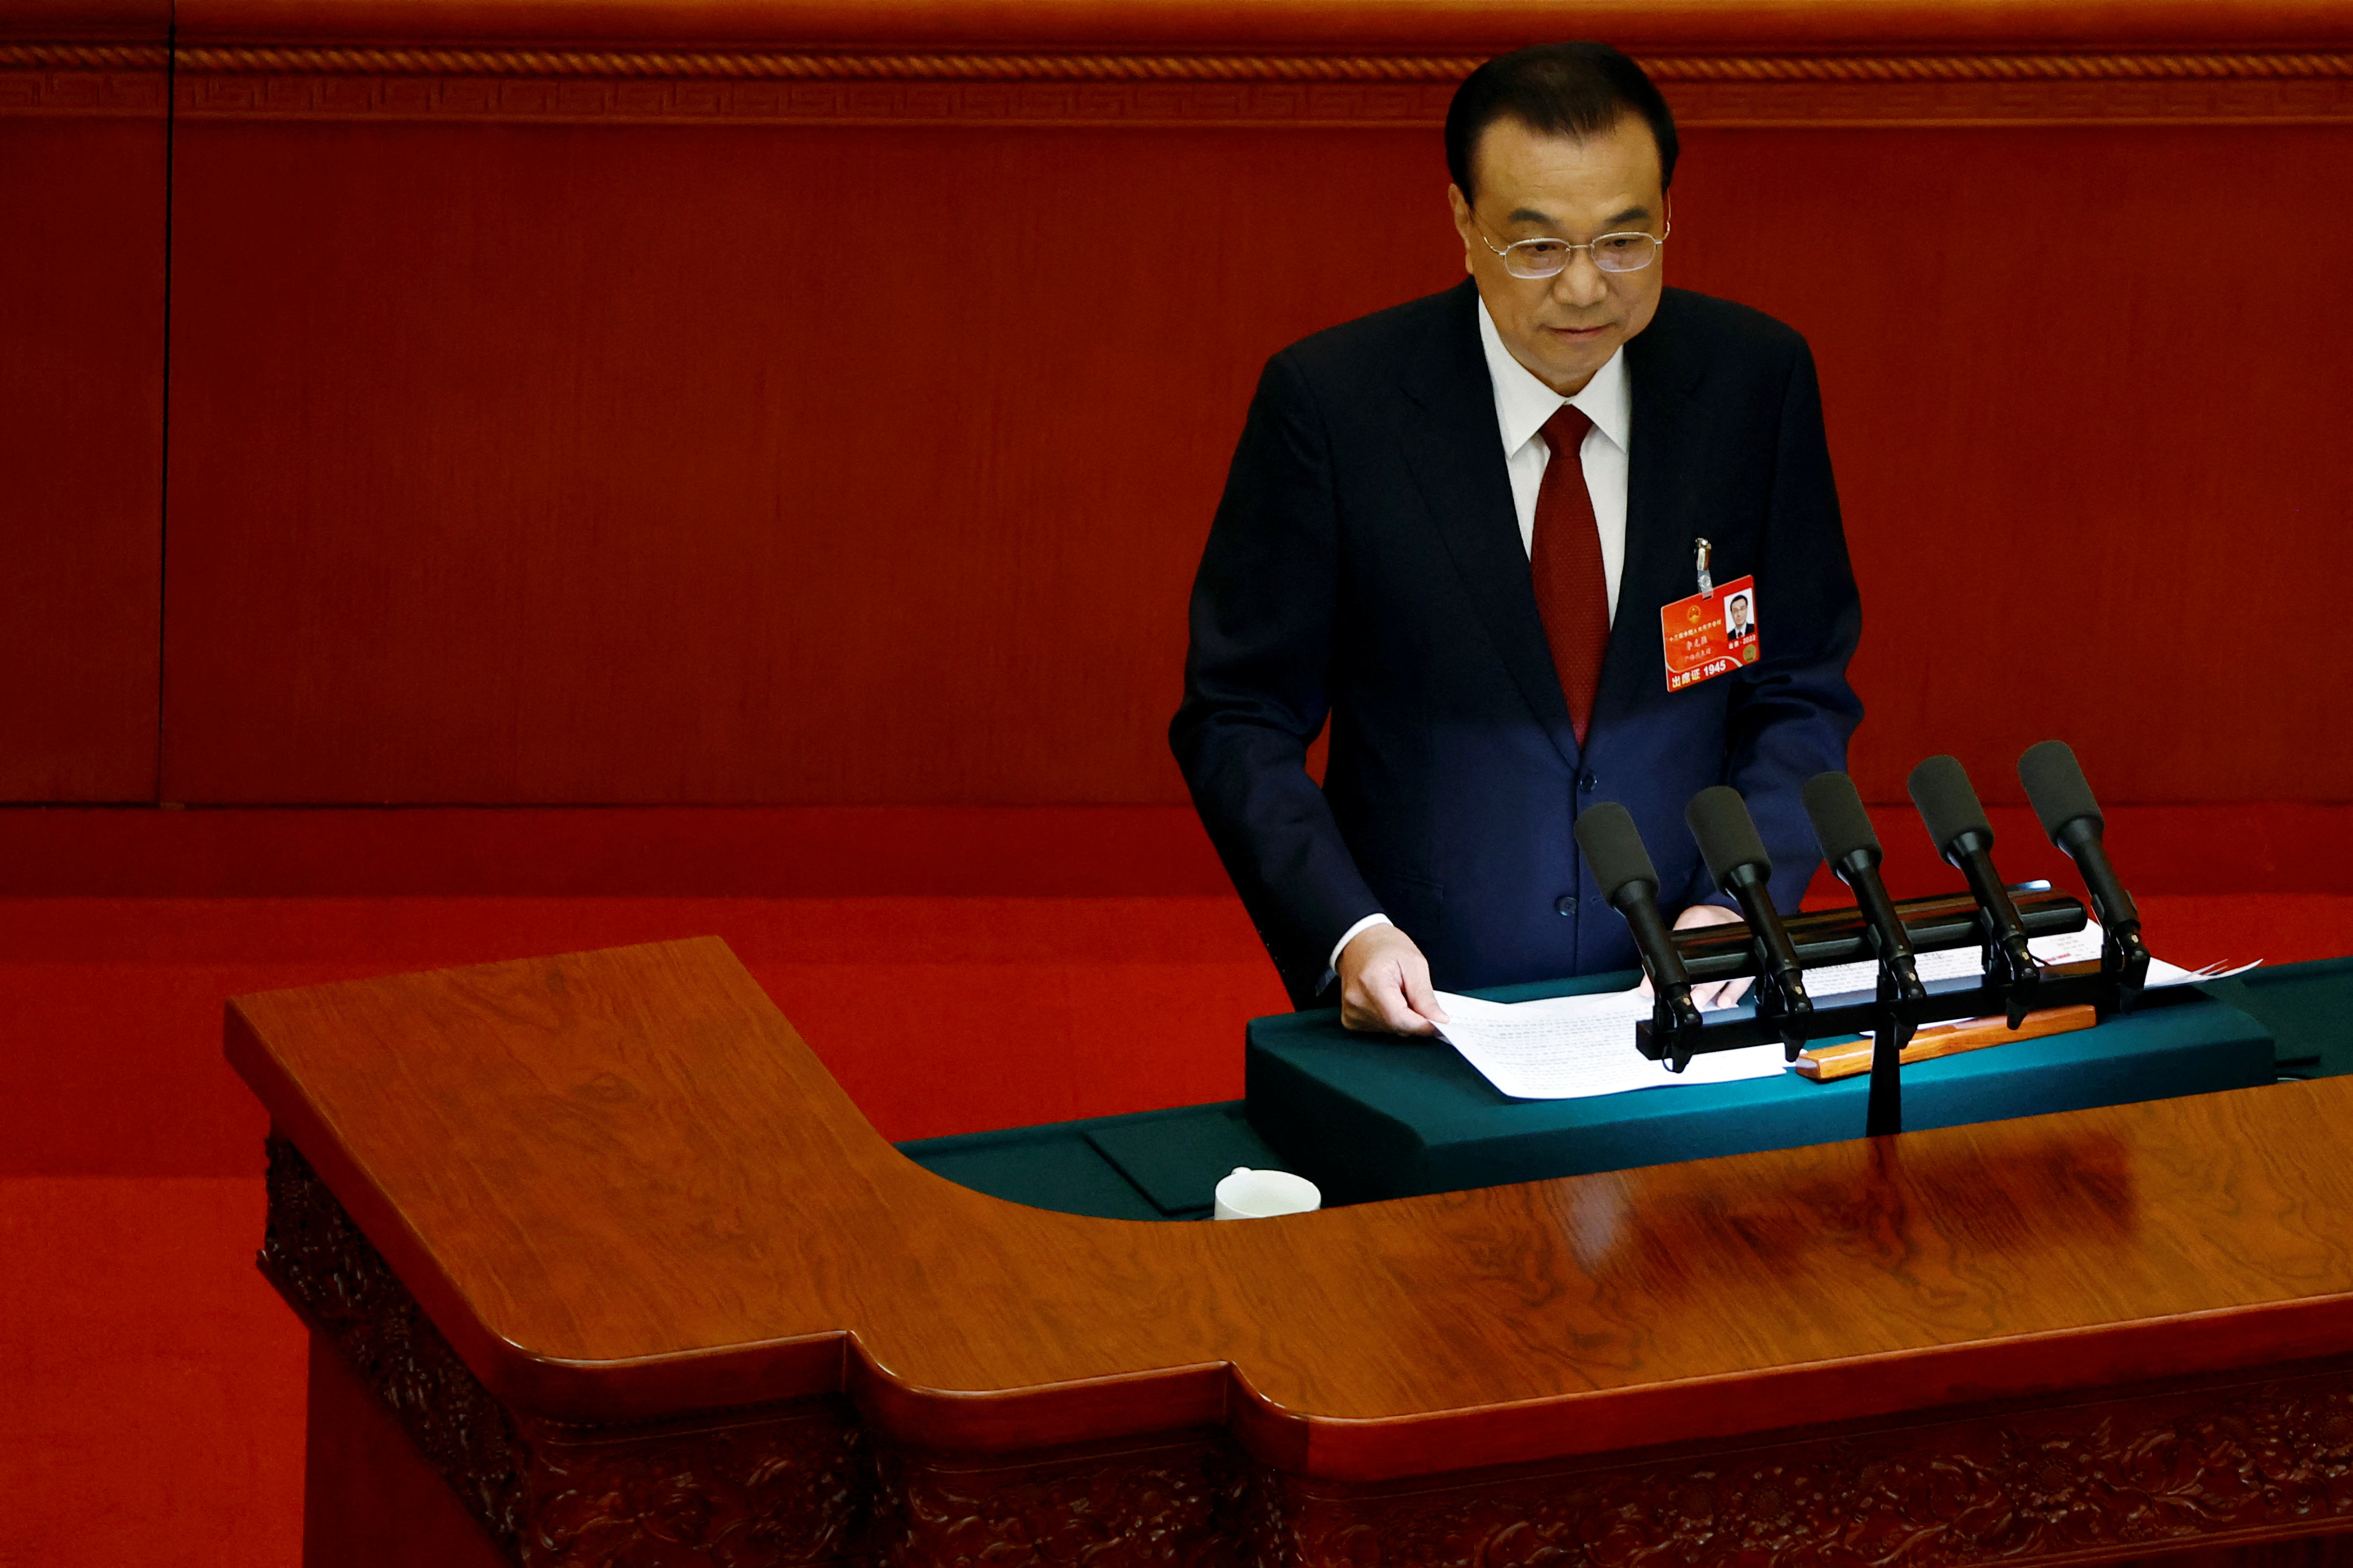 El primer ministro chino, Li Keqiang, entrega su informe de trabajo en la sesión inaugural del Congreso Nacional del Pueblo (APN) en el Gran Salón del Pueblo en Beijing, China, el 5 de marzo de 2022. REUTERS/Carlos García Rawlins